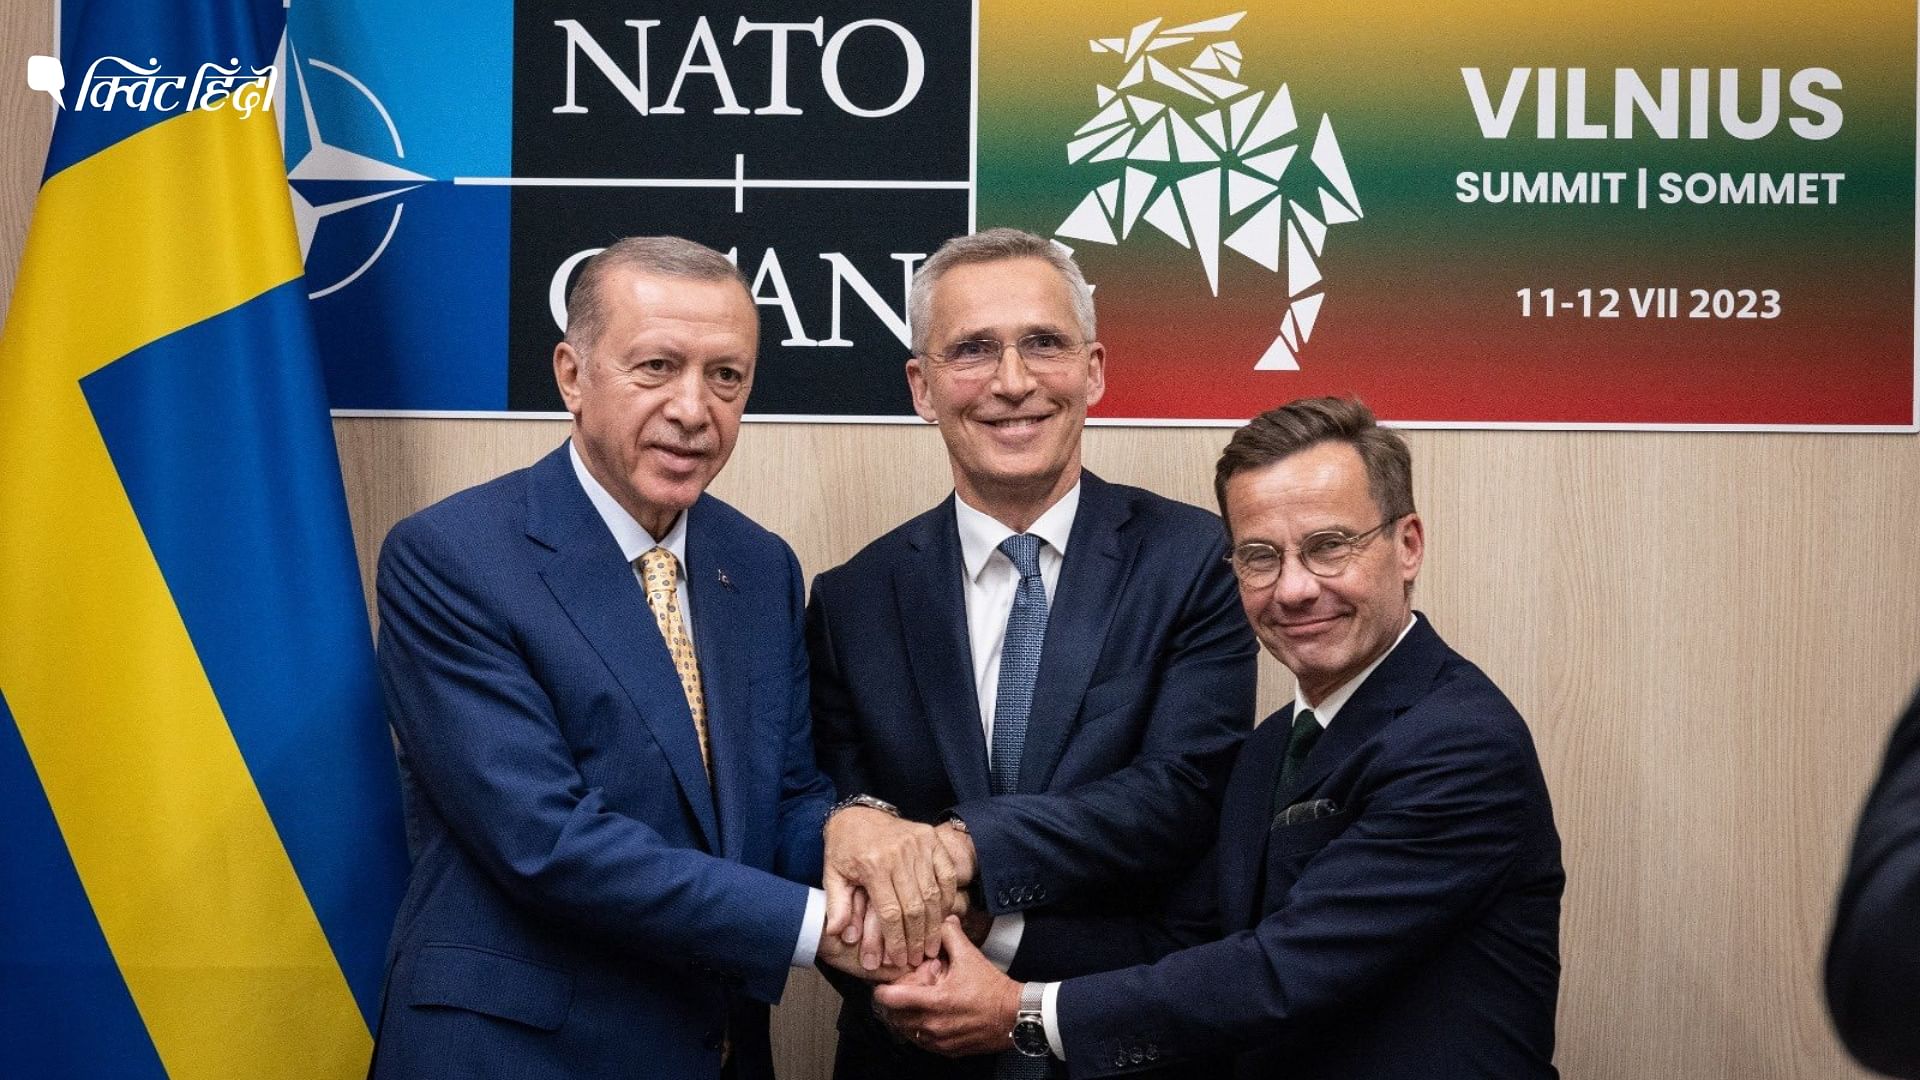 <div class="paragraphs"><p>स्वीडन के लिए NATO में शामिल होने का रास्ता साफ, तुर्की के लिए क्या मायने?</p></div>